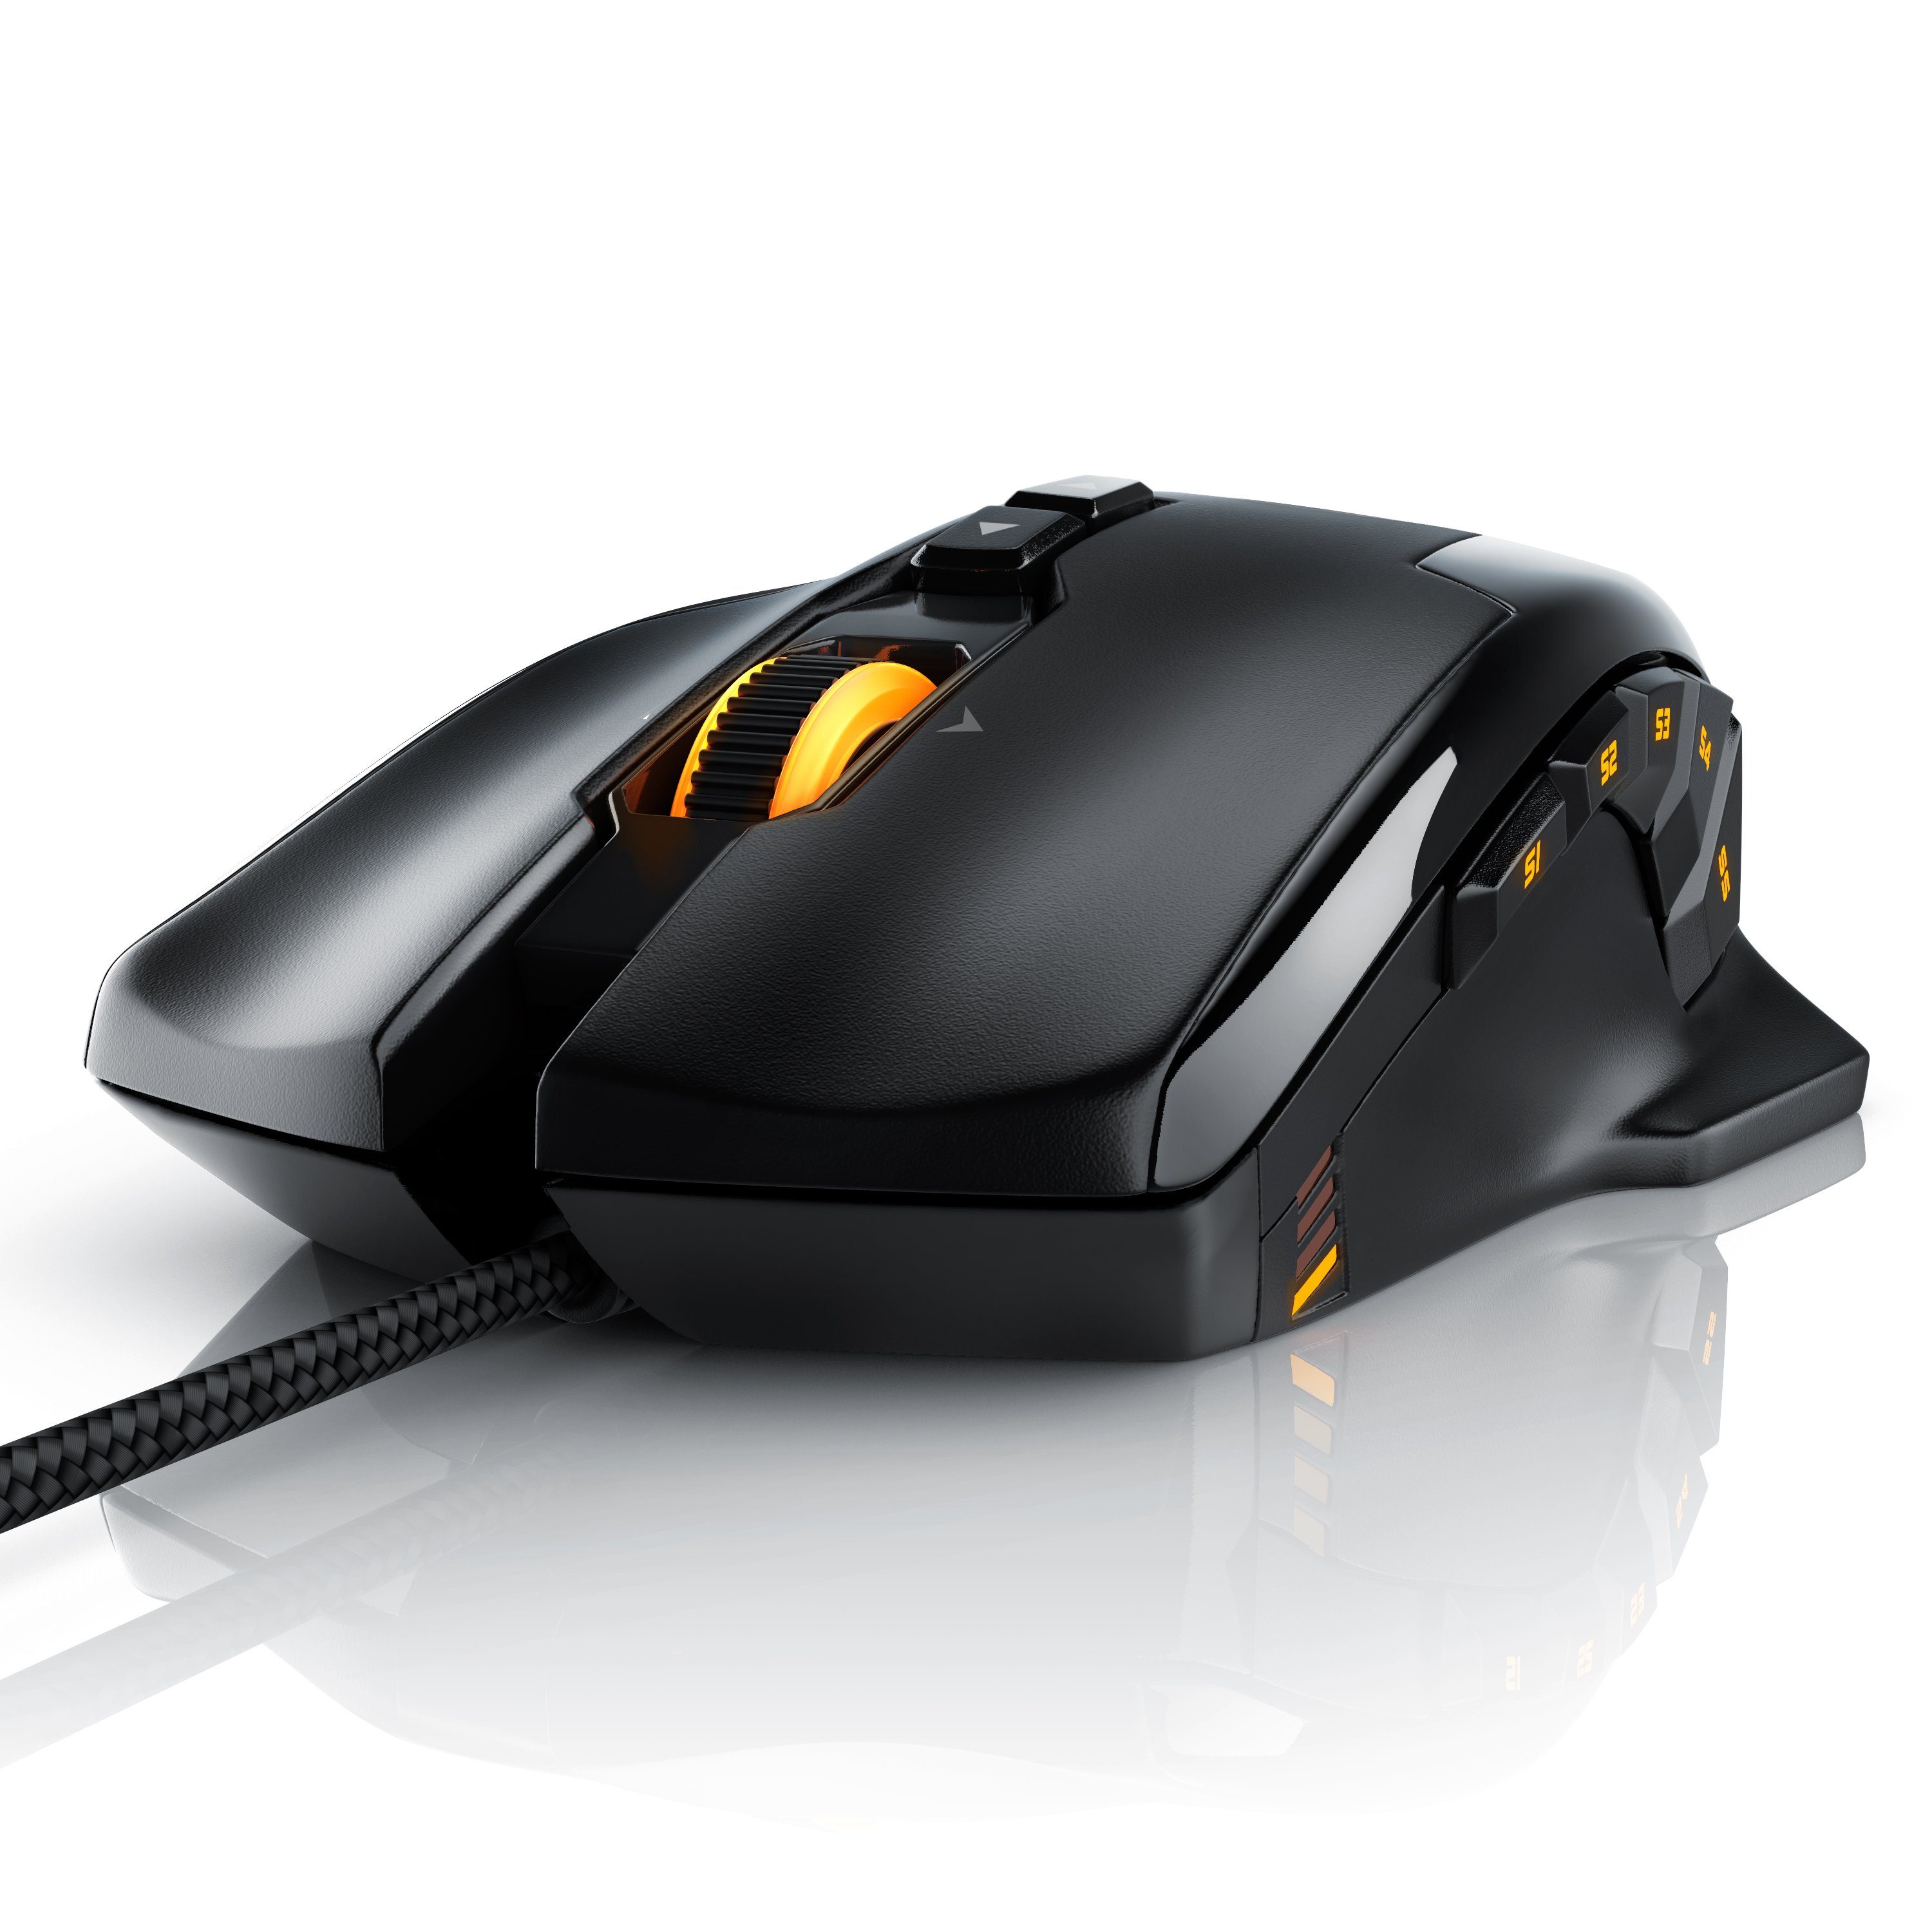 Gaming-Maus Gewichts-Justierung) 10800dpi, (kabelgebunden, USB Laser 1000 dpi, mit Gaming LEDs, Titanwolf RGB Mouse